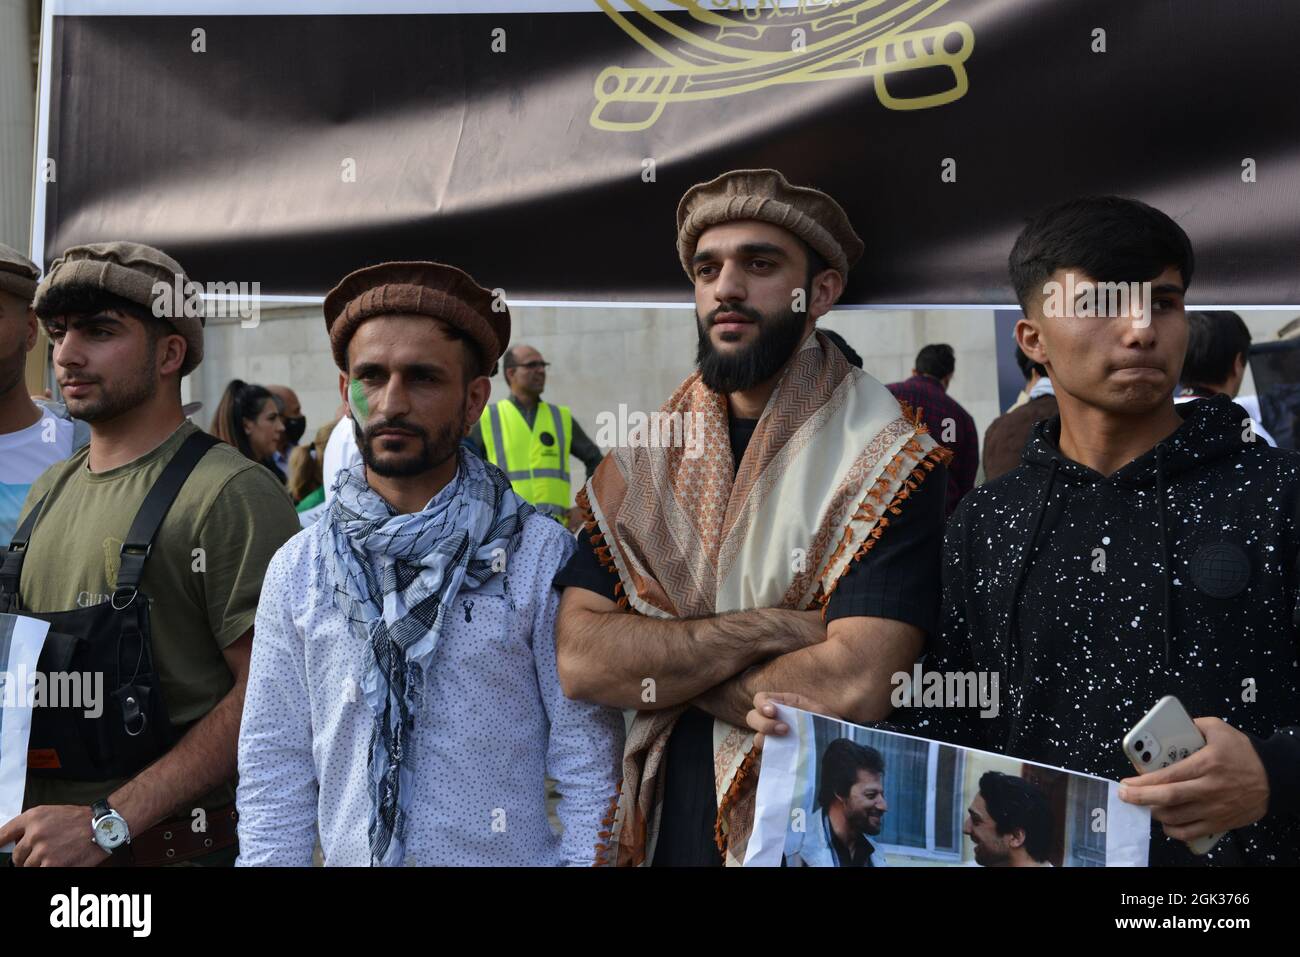 Un gruppo di uomini afghani si è riunito a Trafalgar Square per dimostrare il loro sostegno al leader delle forze di resistenza Panjshir Ahmad Massoud. Foto Stock